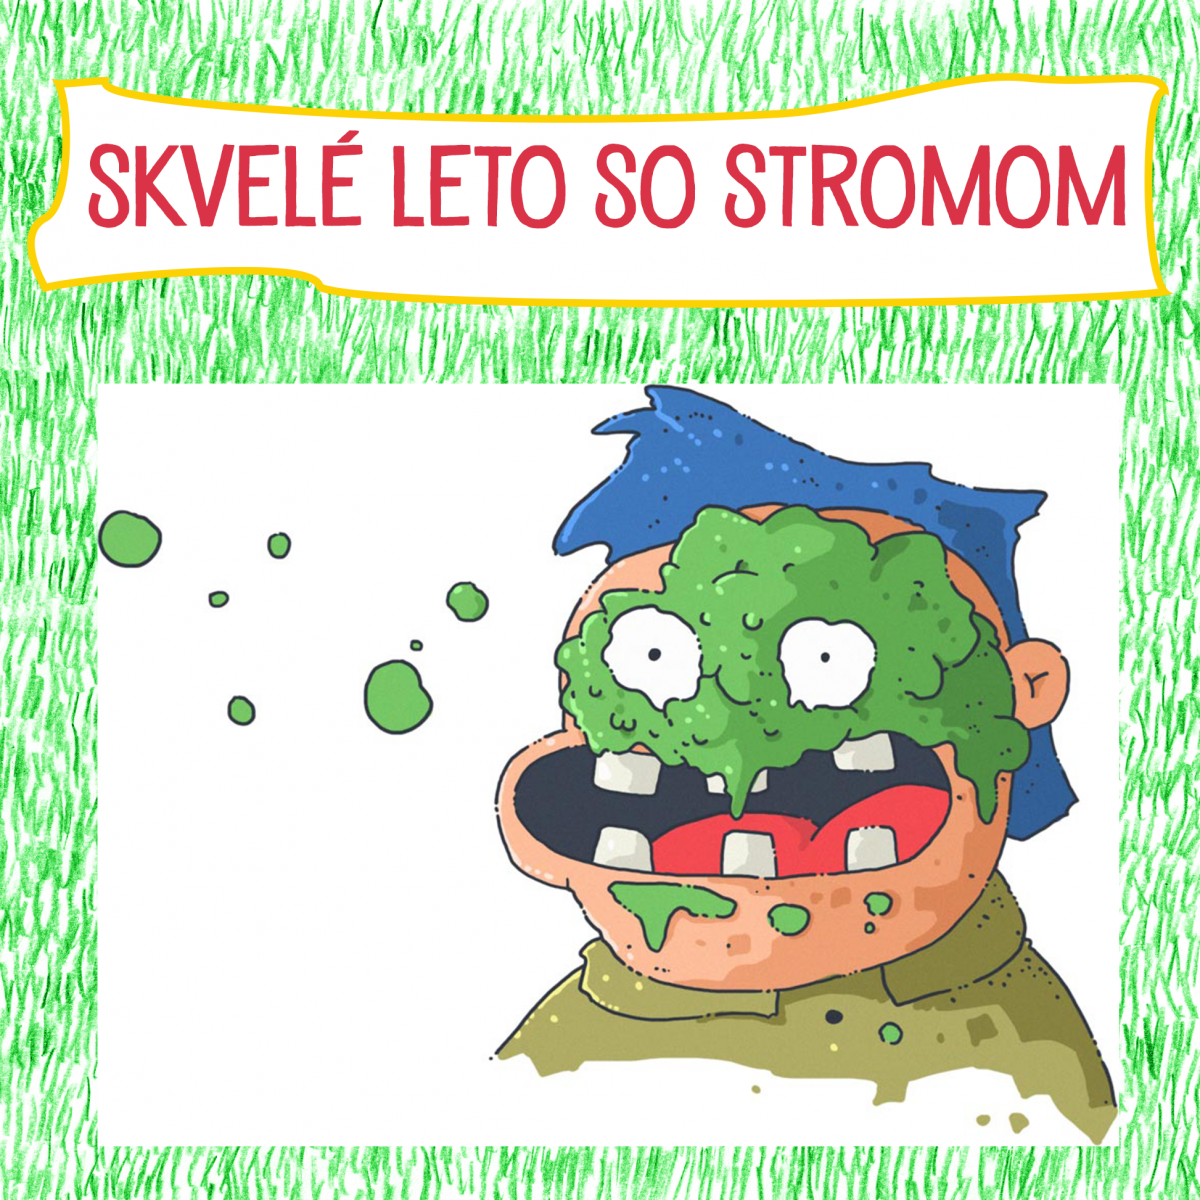 Slovenské jedlá